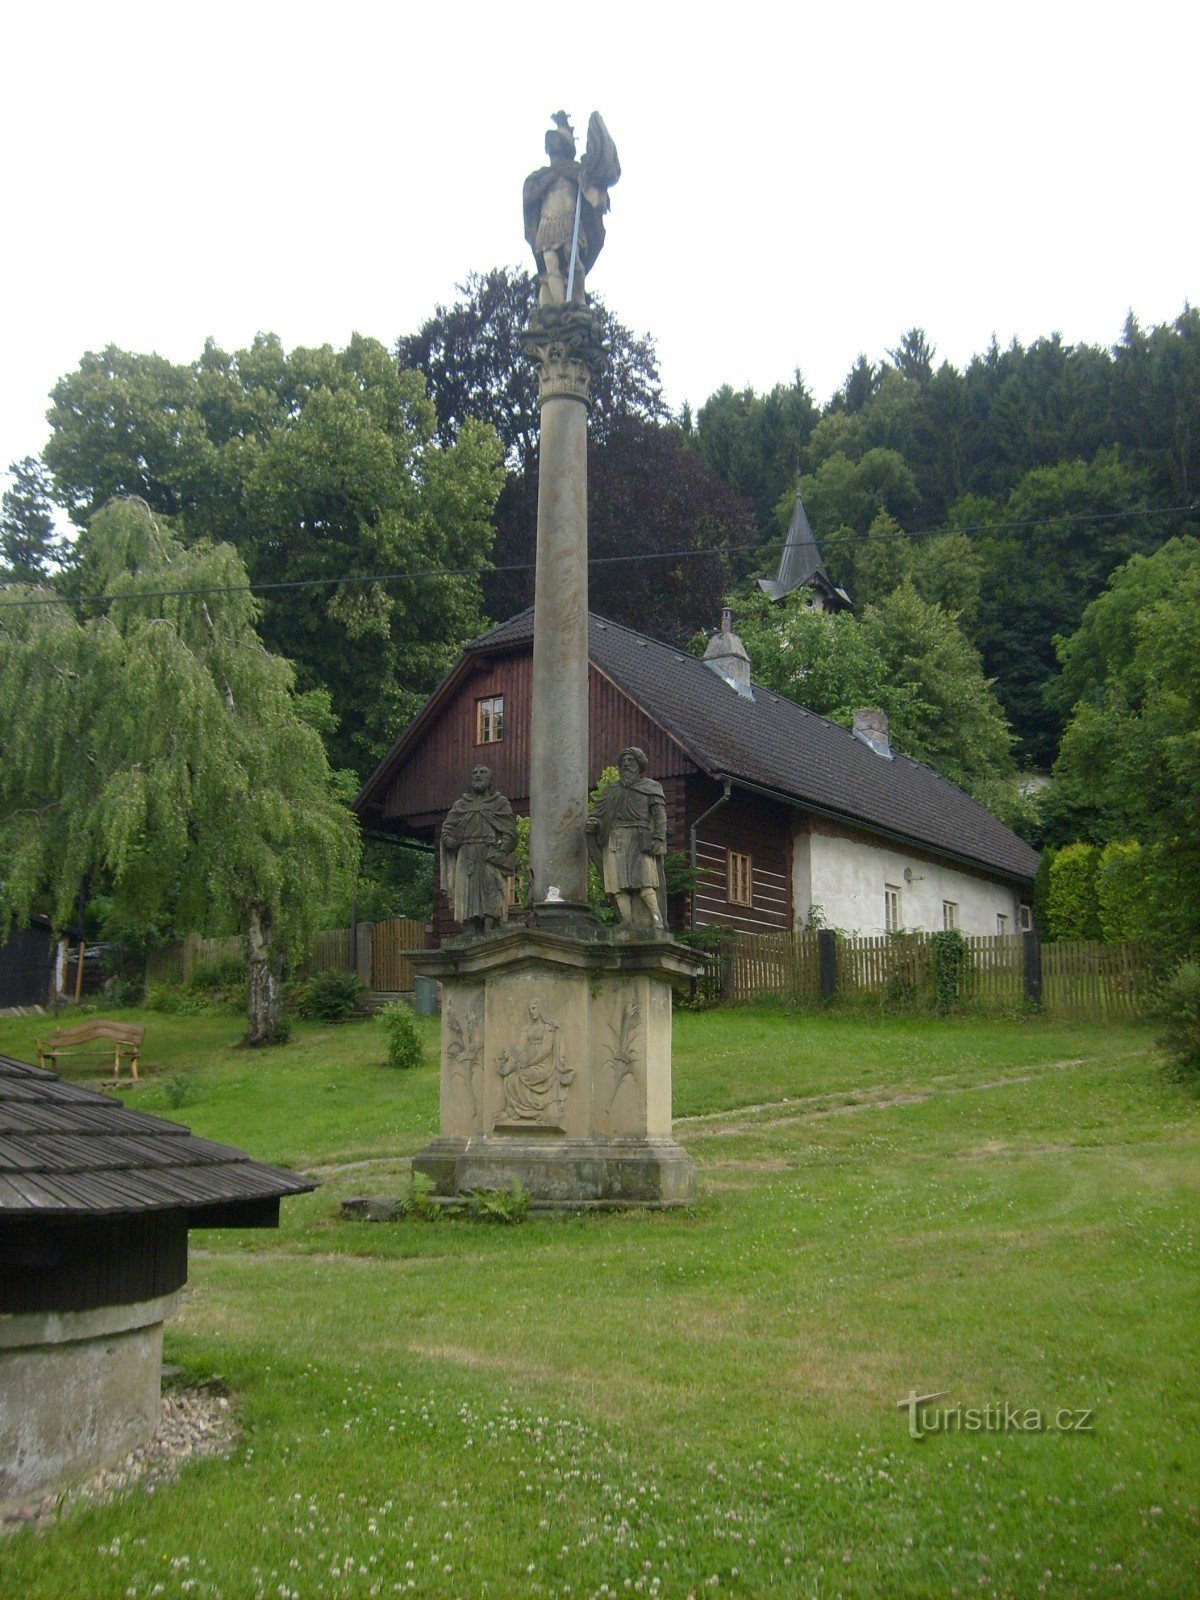 Coluna Mariana na aldeia de Potštejn